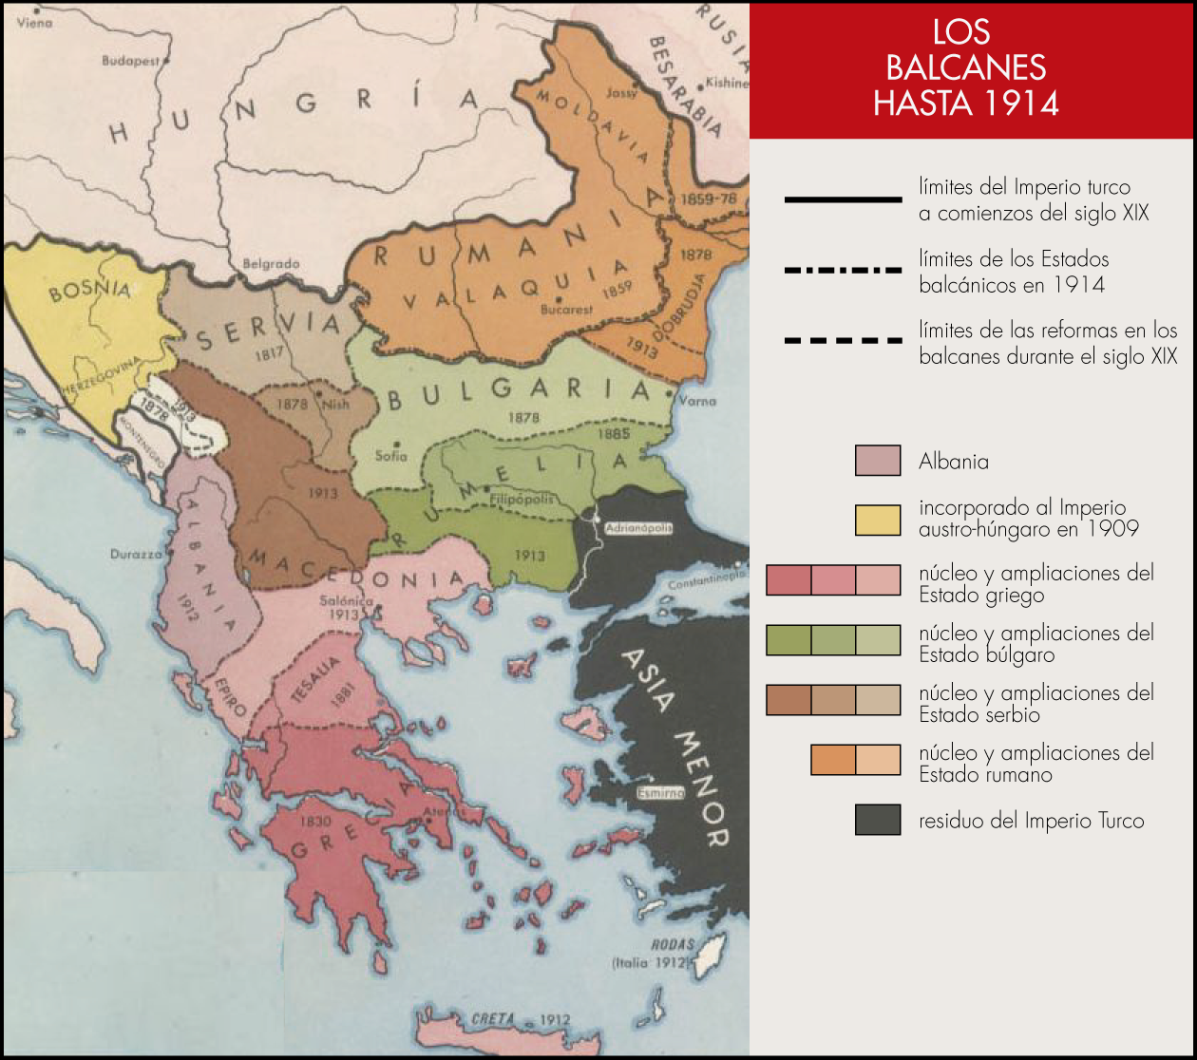 Los Balcanes hasta 1914